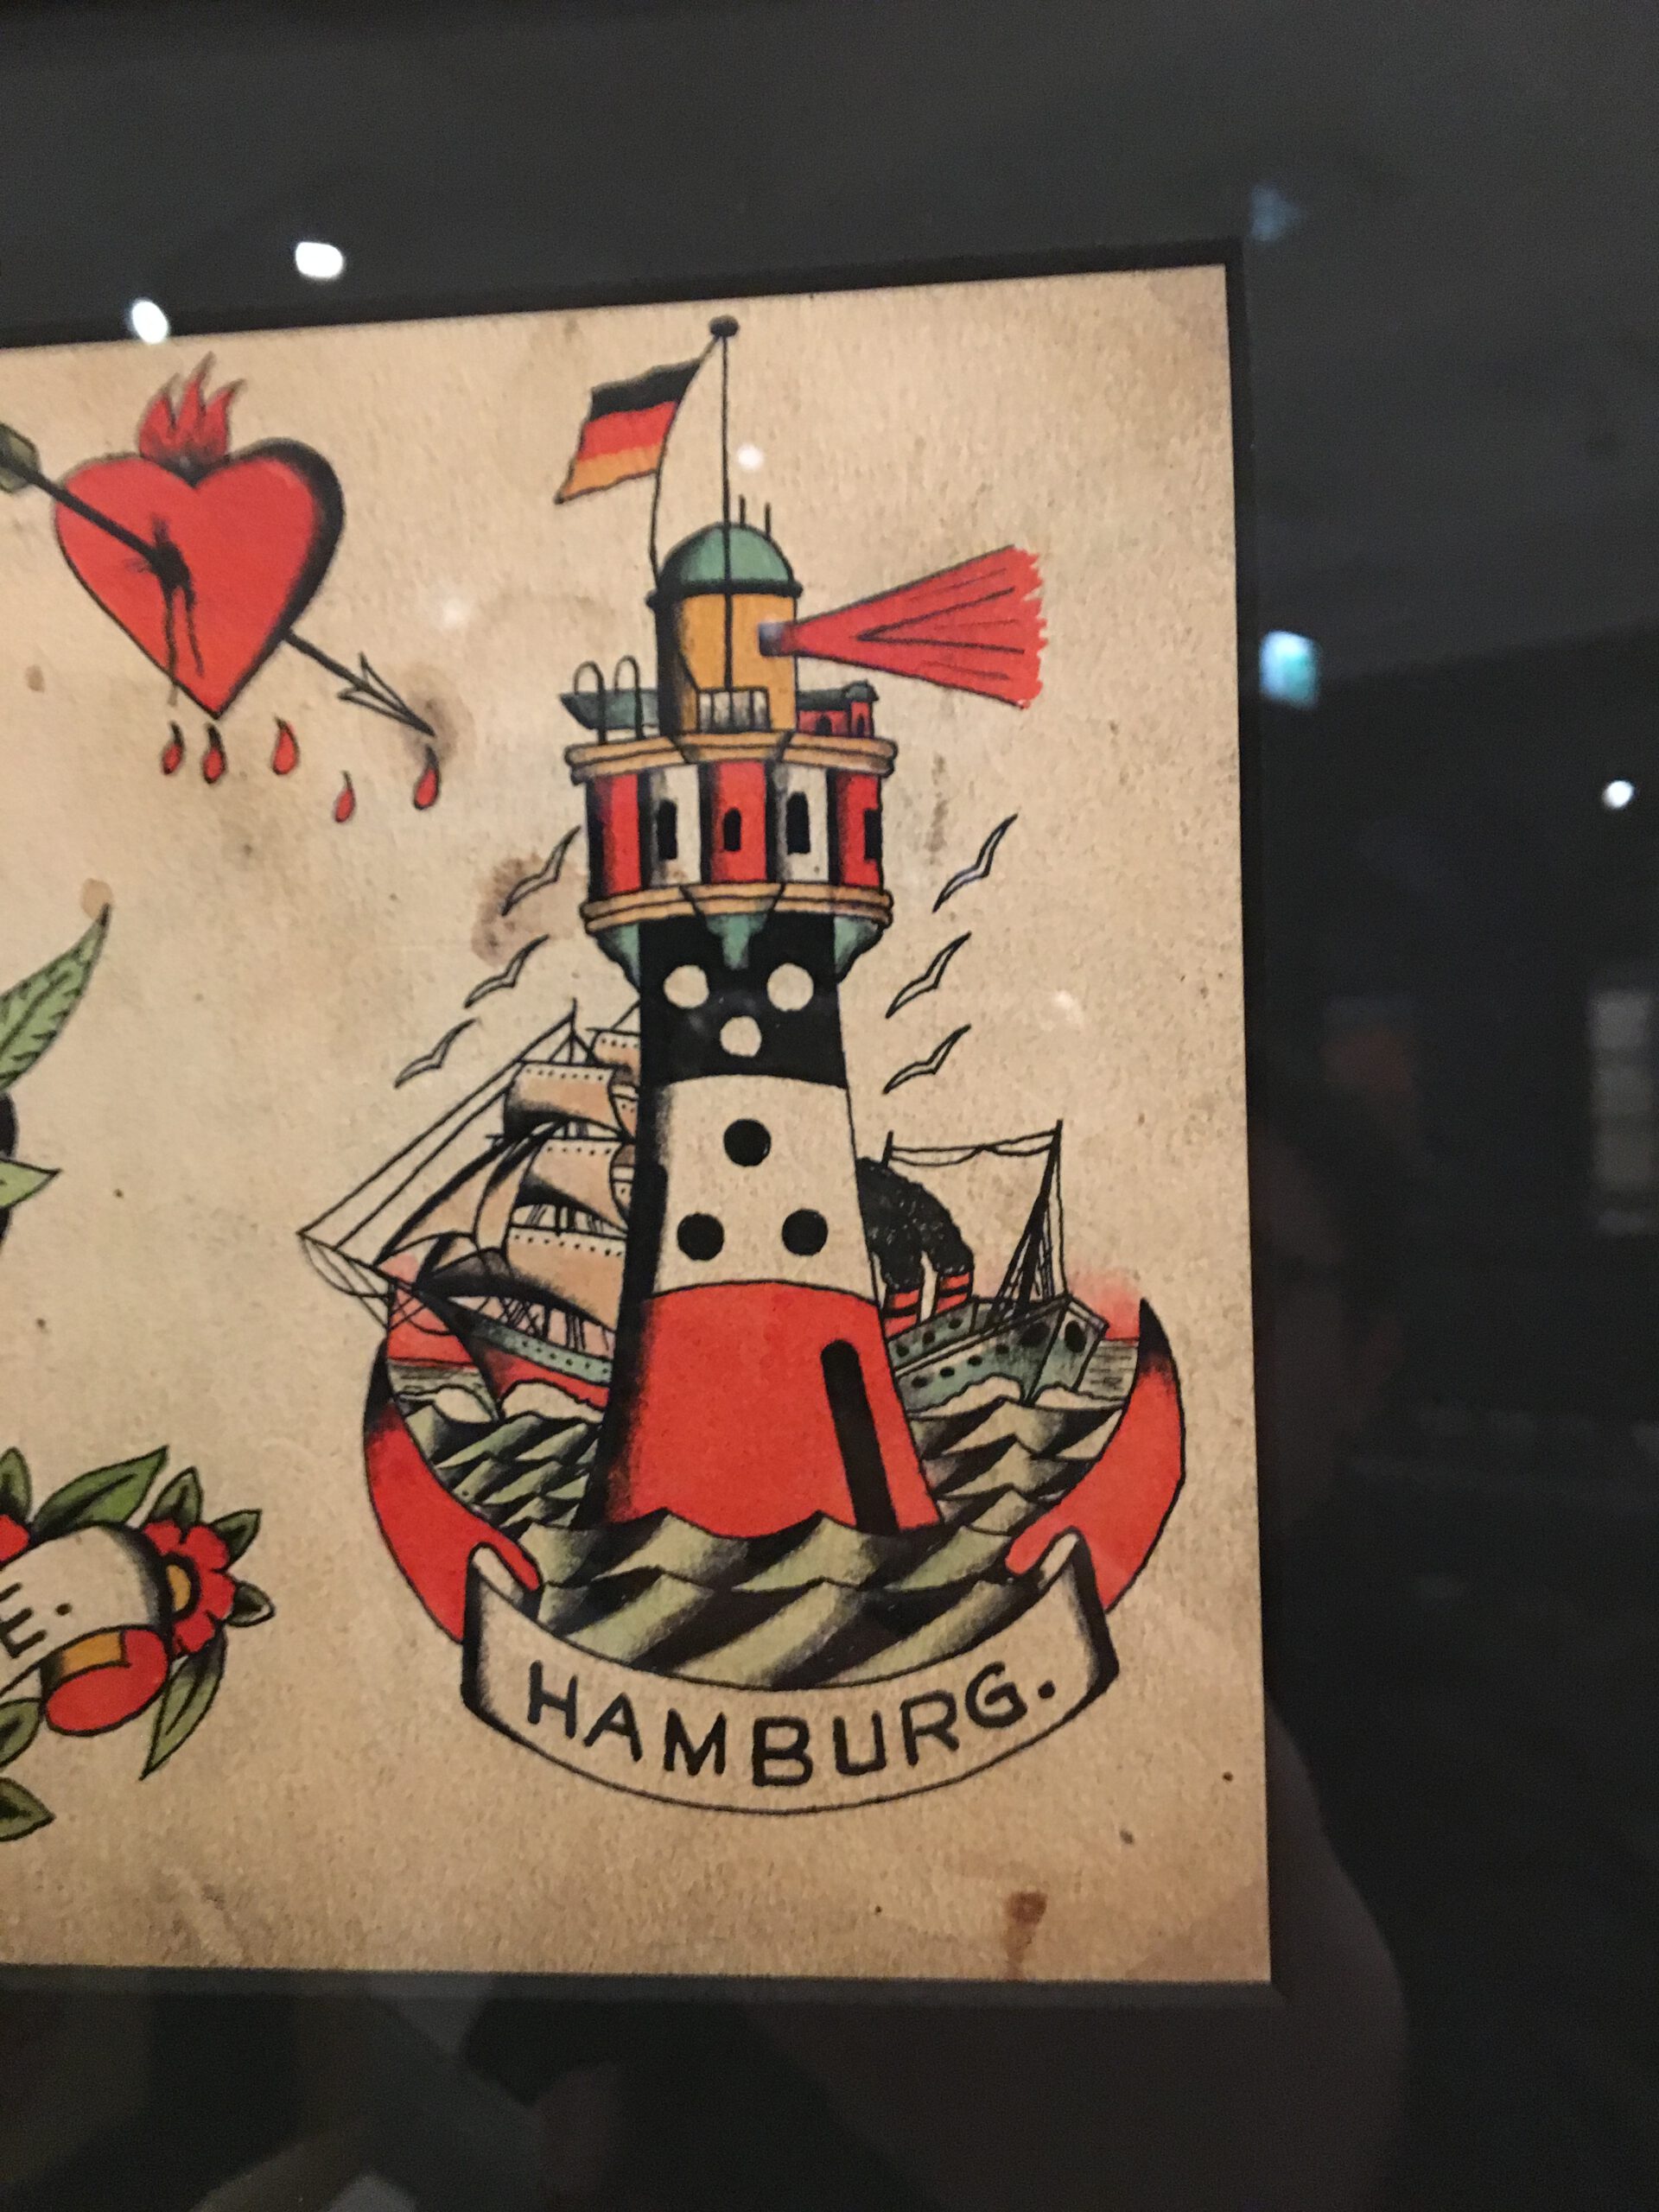 Teil eines wunderschönen Bogens von Christian wahrlich mit einem Leuchtturm in drei Farben und eine Banderole Hamburg unten drunter.